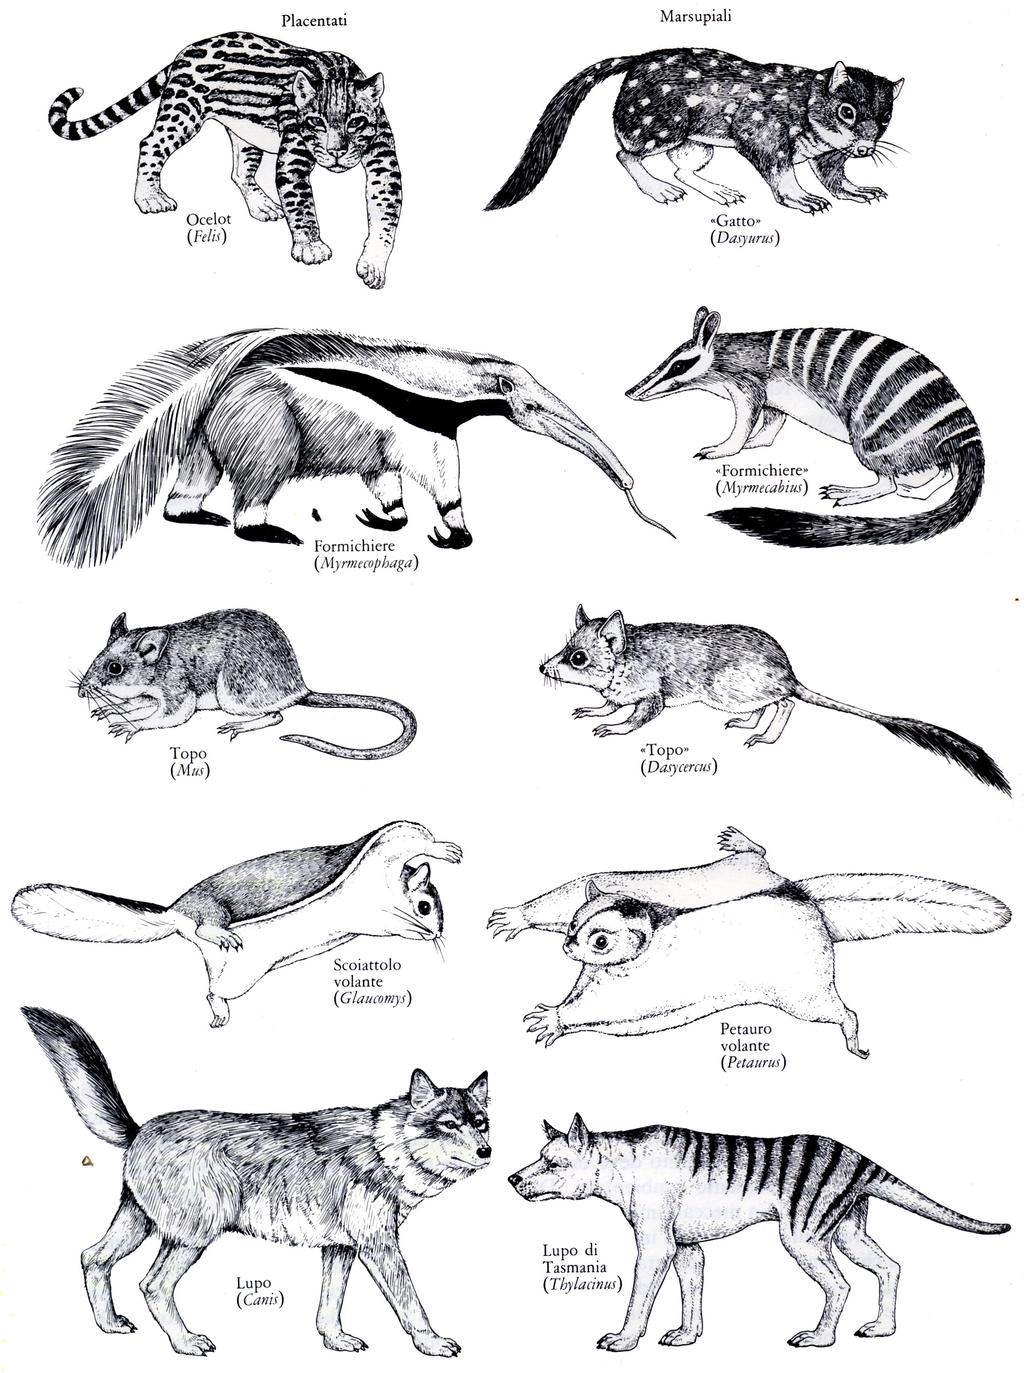 Prove dell'evoluzione (5) Biogeografia: descrive la distribuzione delle forme viventi sul Pianeta I Placentati e i Marsupiali sono molto simili nella forma,